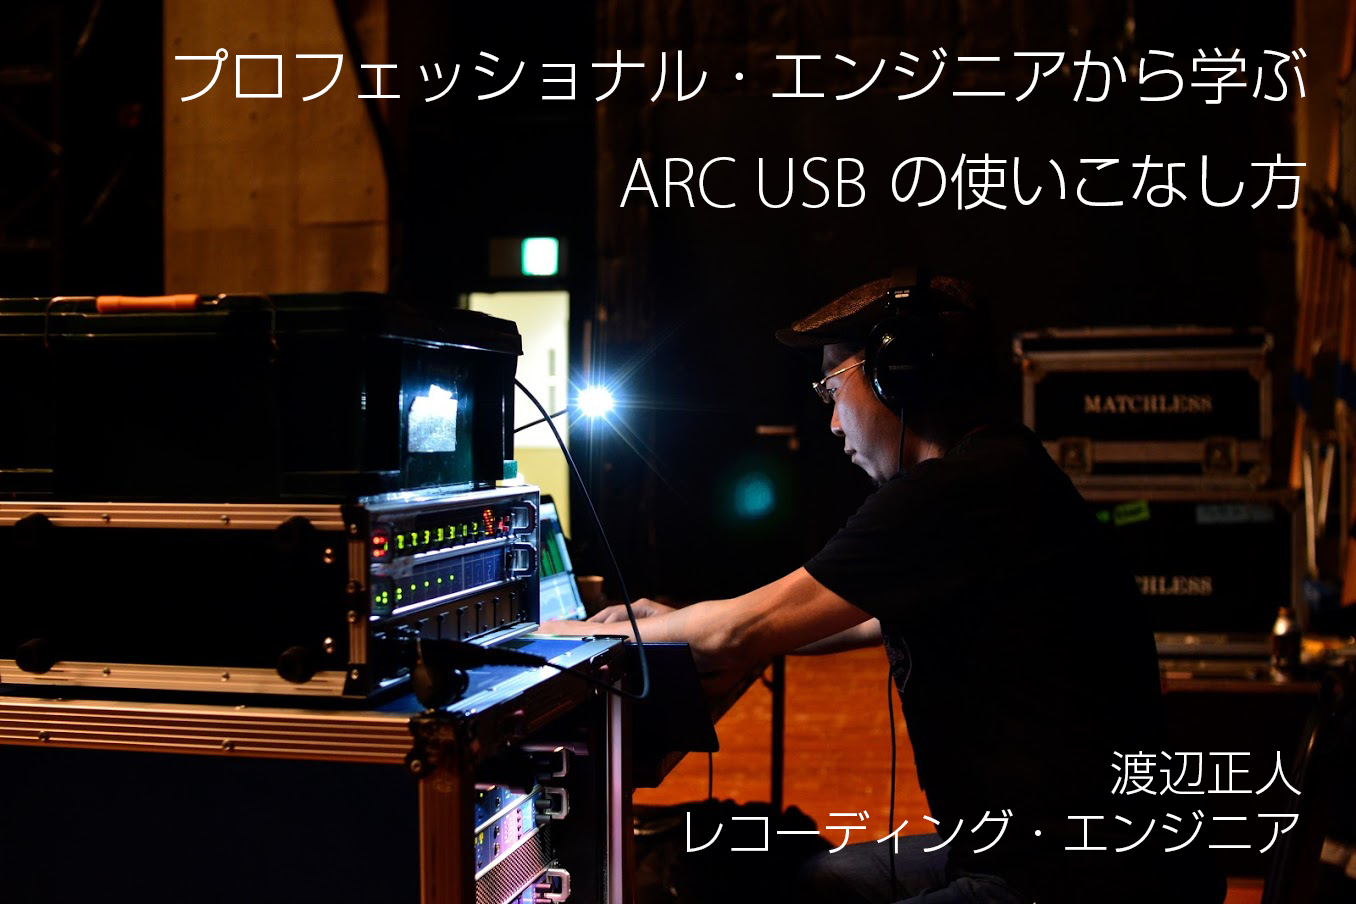 渡辺正人 - プロフェッショナル・エンジニアから学ぶARC USBの使いこなし方